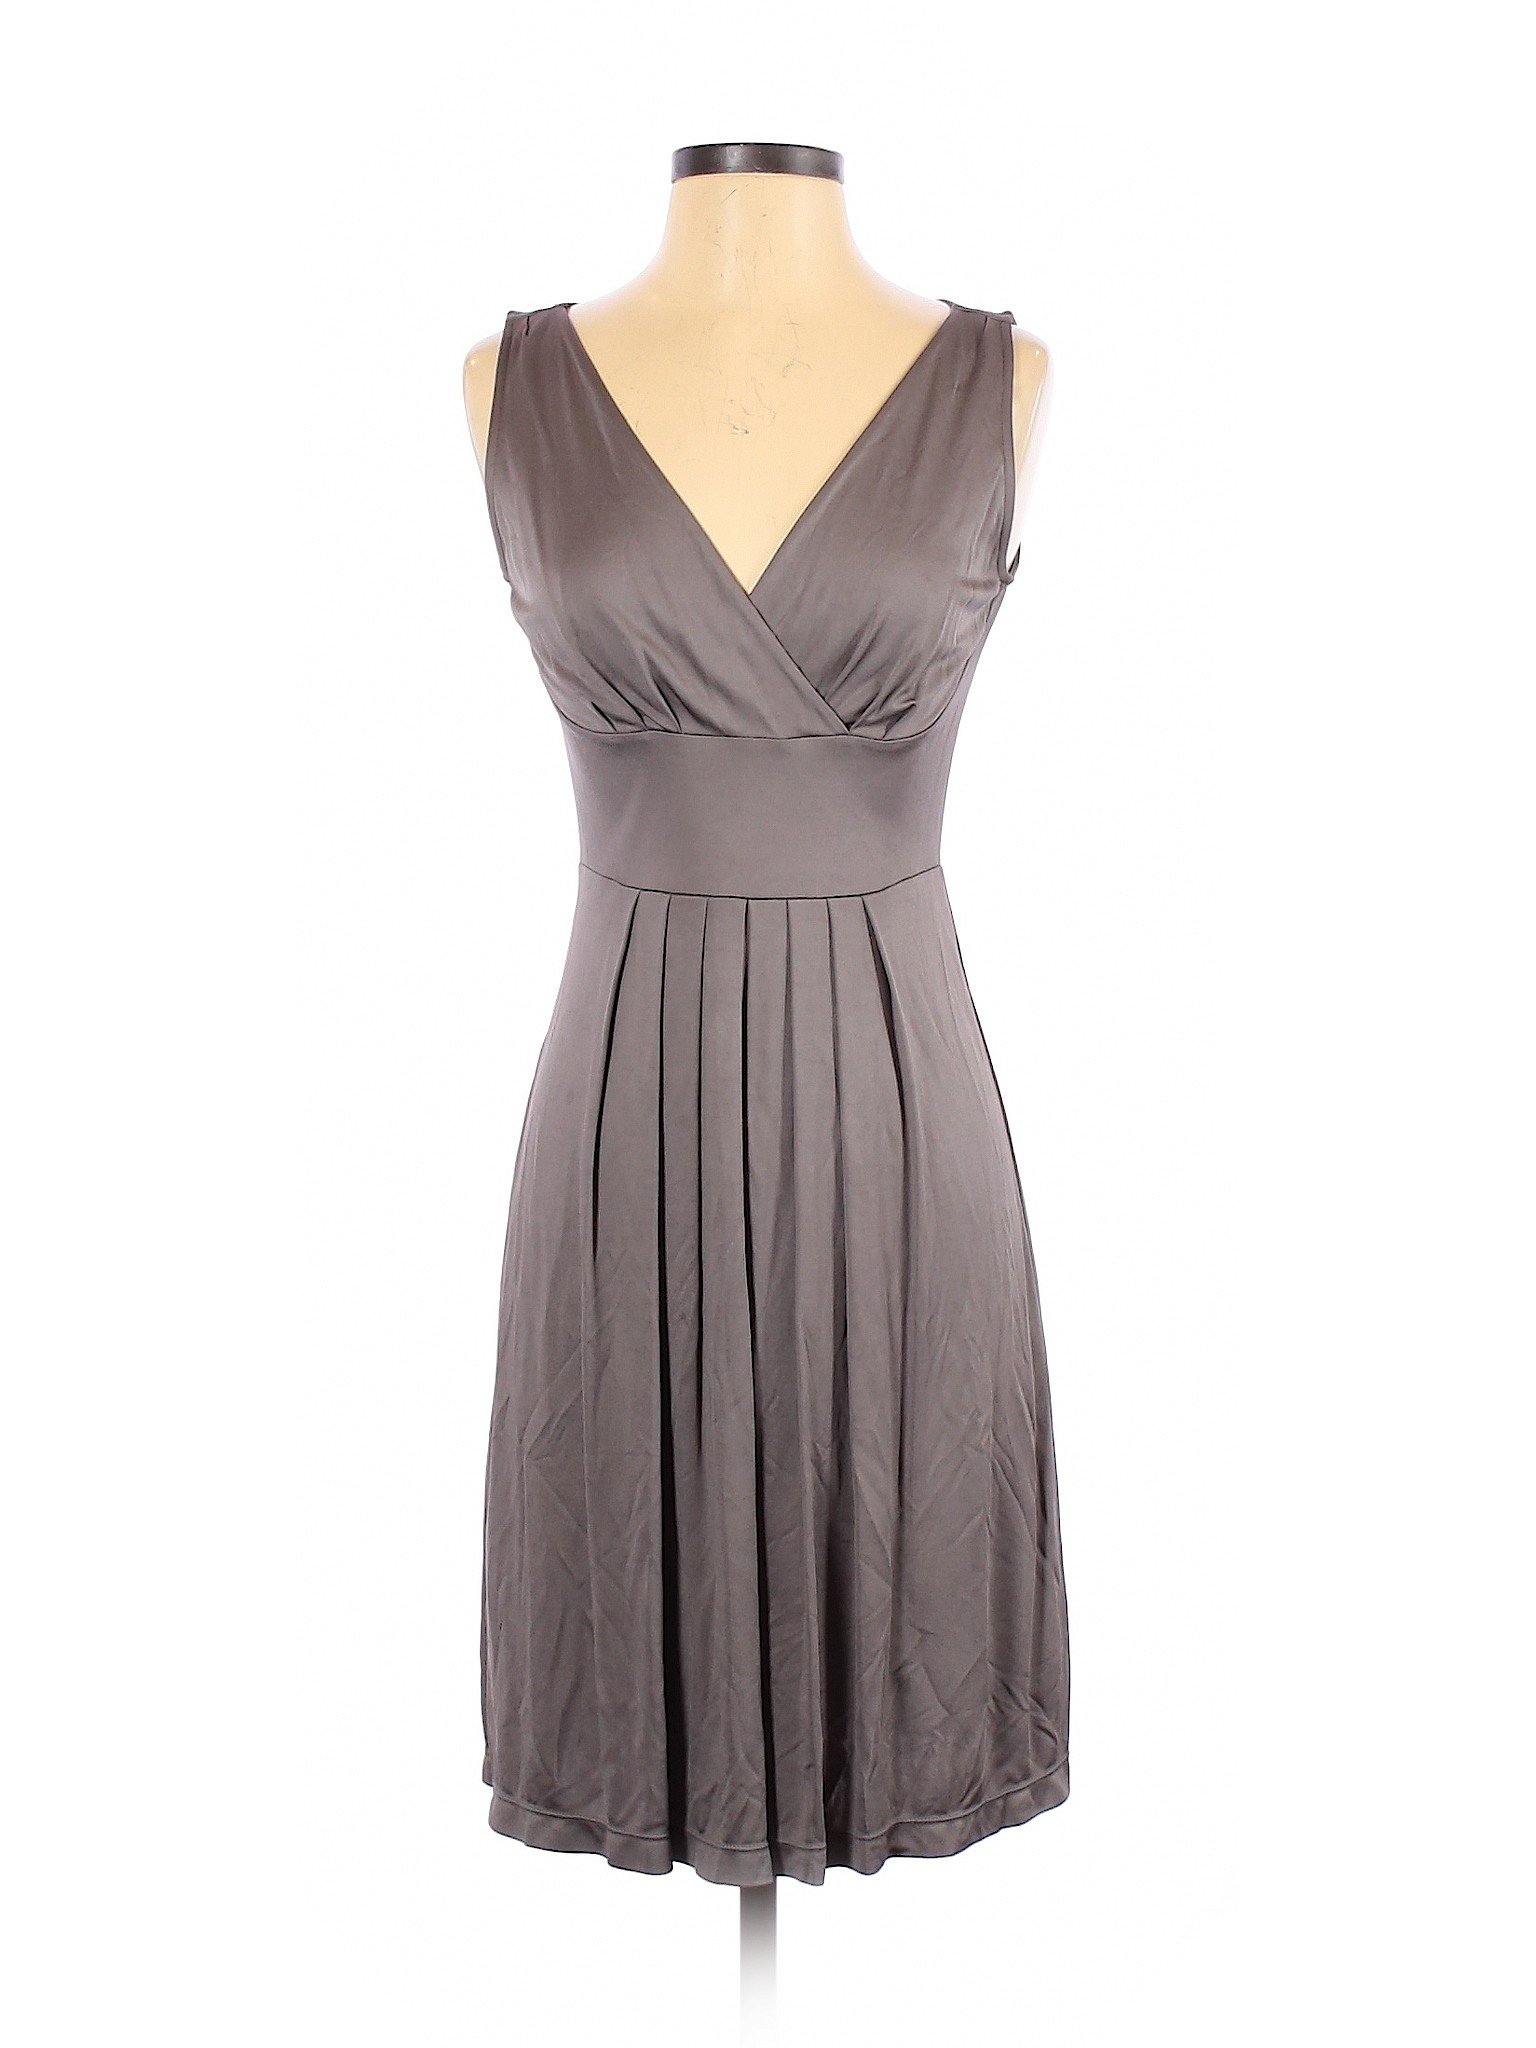 Ann Taylor Women Gray Cocktail Dress XS | eBay